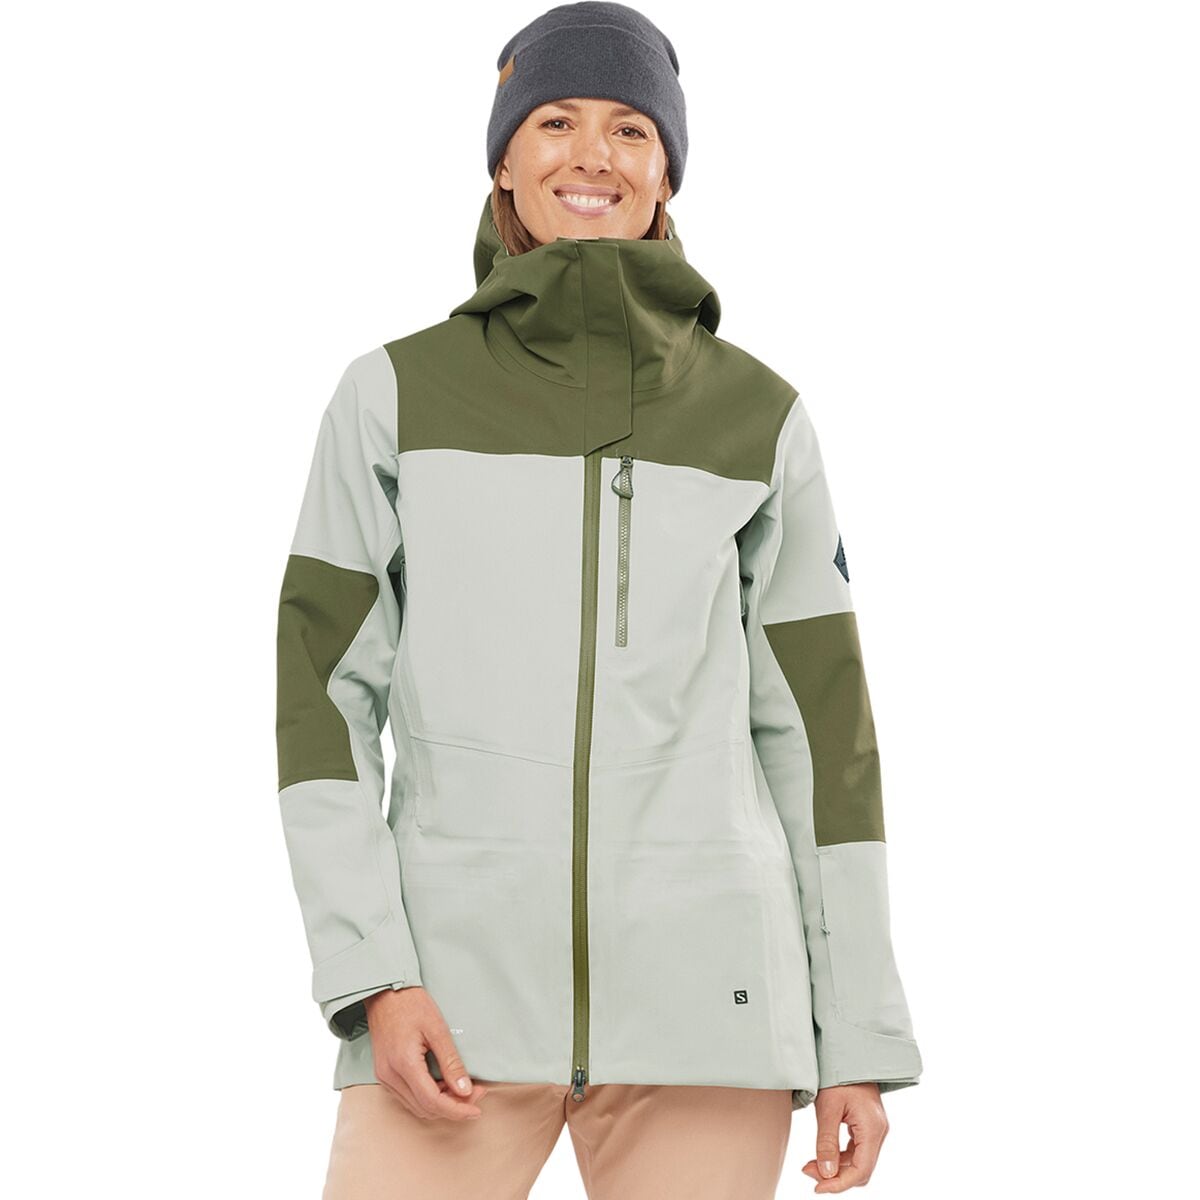 Salomon Ski Clothing | Backcountry.com